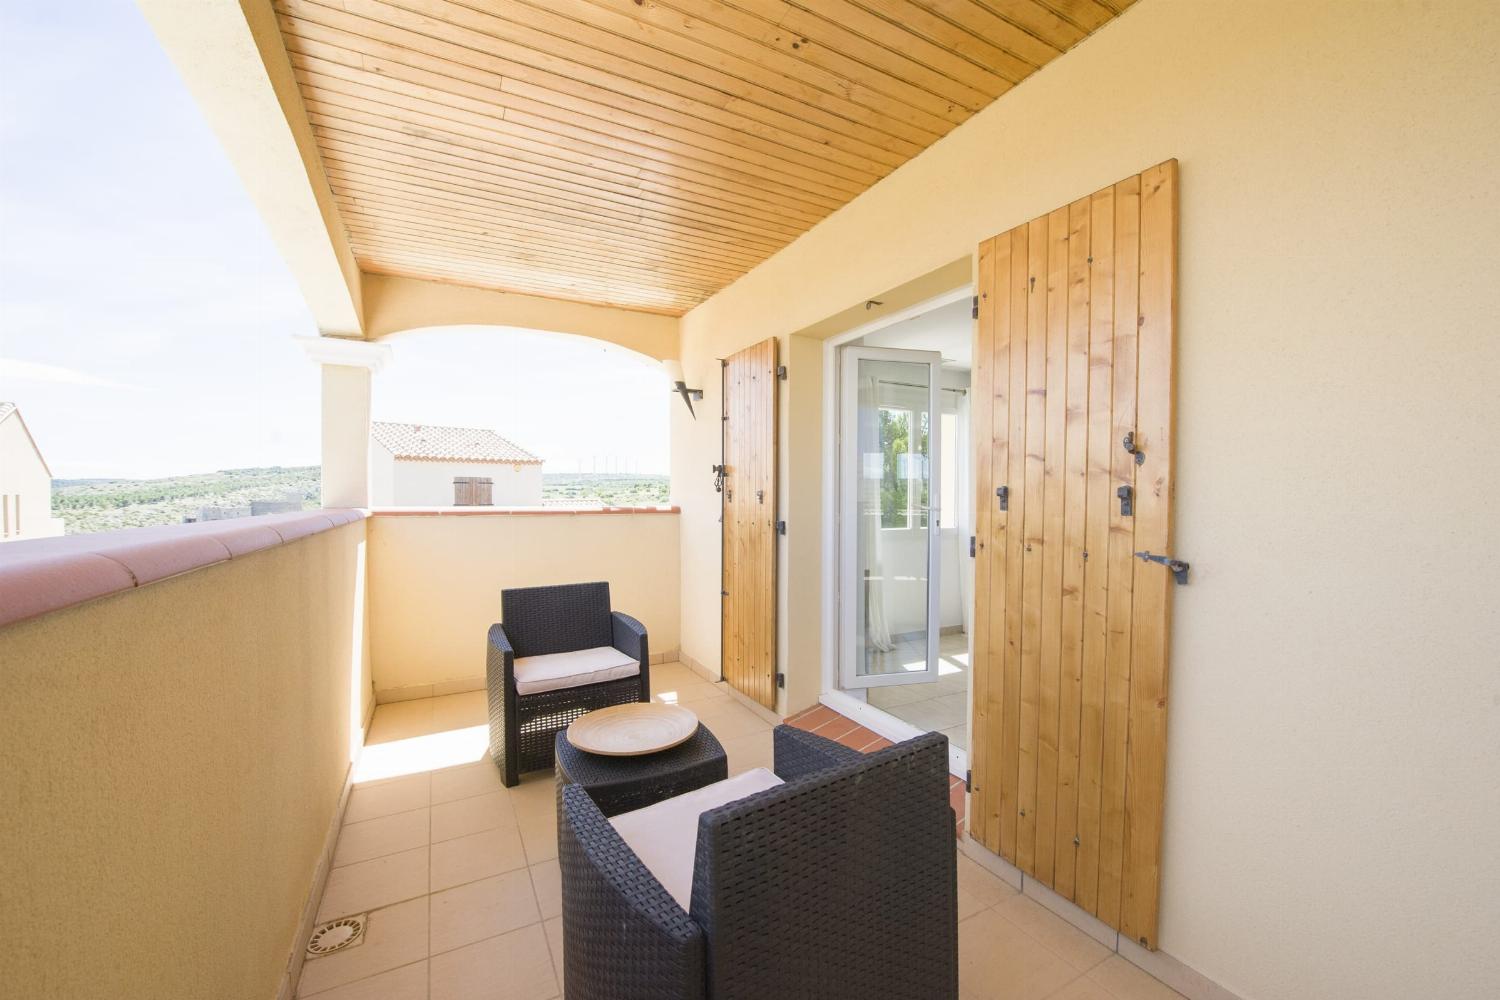 Terrasse du 1er étage | Villa de vacances dans le sud de la France